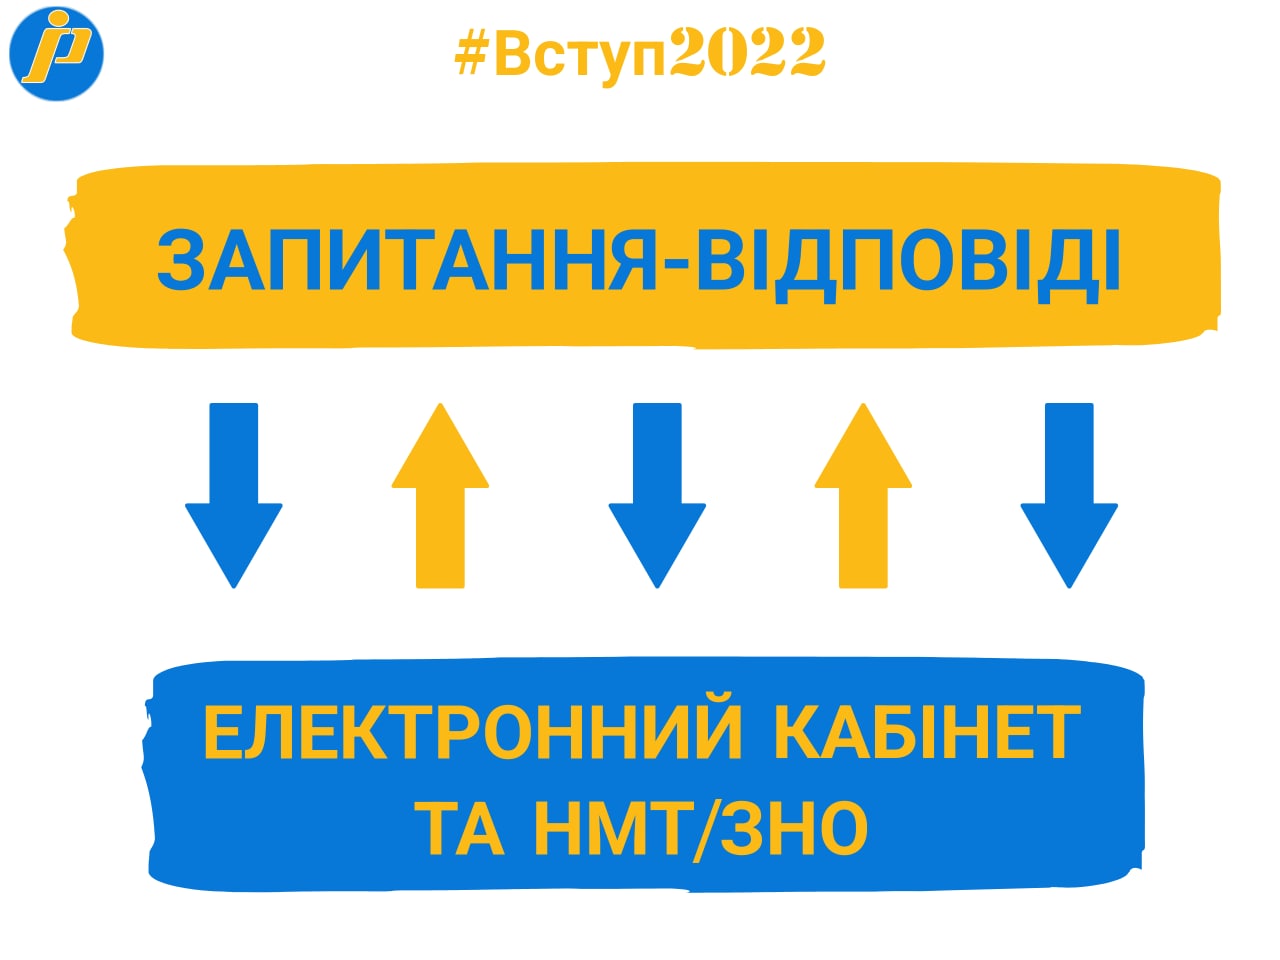 Вступ-2022: відповіді на запитання щодо реєстрації електронного кабінету та складання НМТ